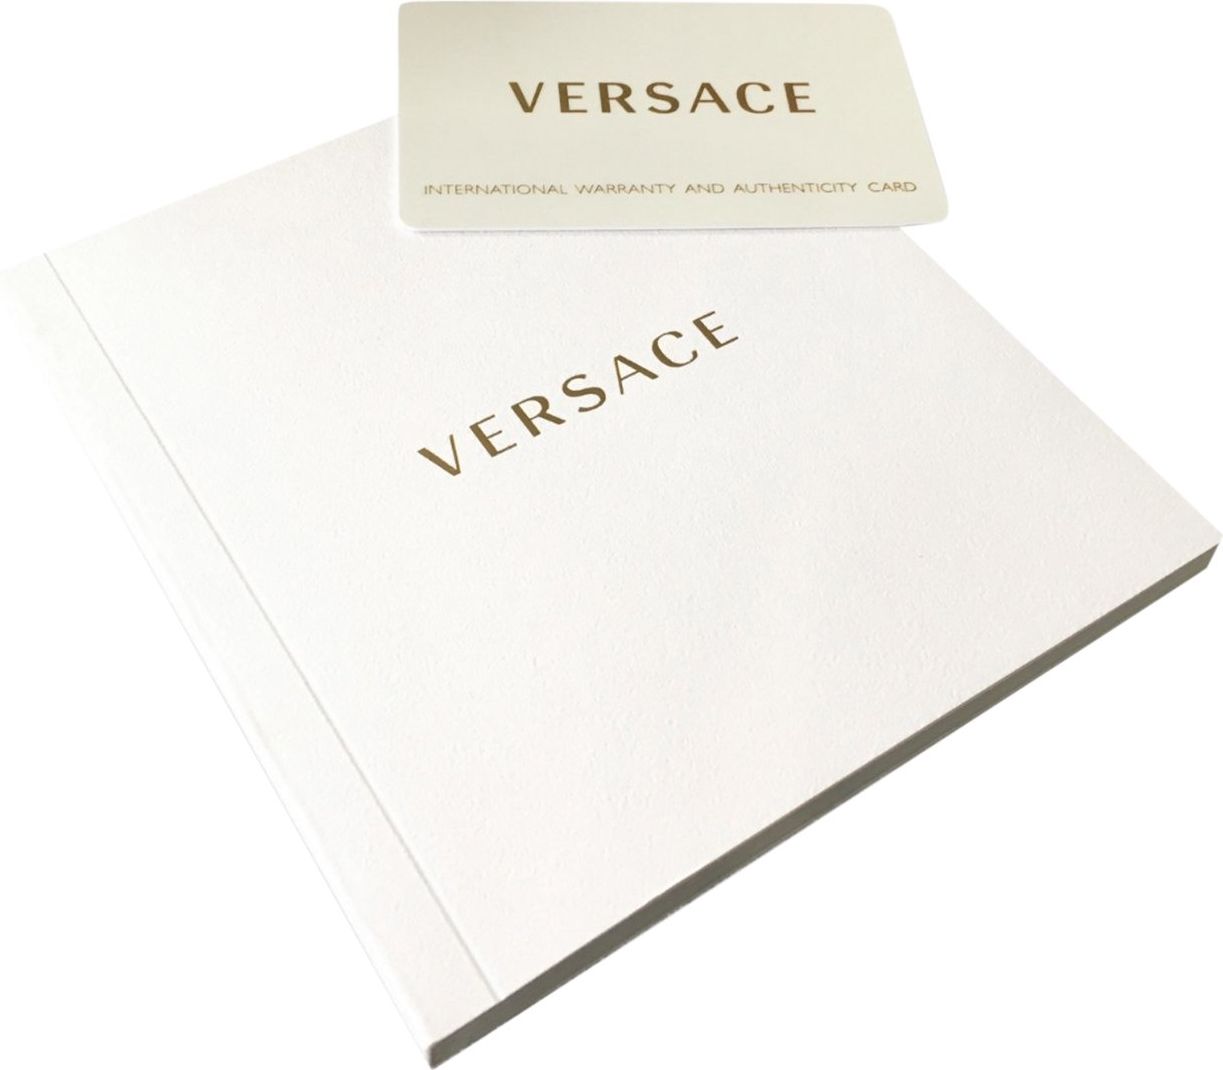 Versace VE3E00221 Sport Tech heren horloge 45 mm Grijs